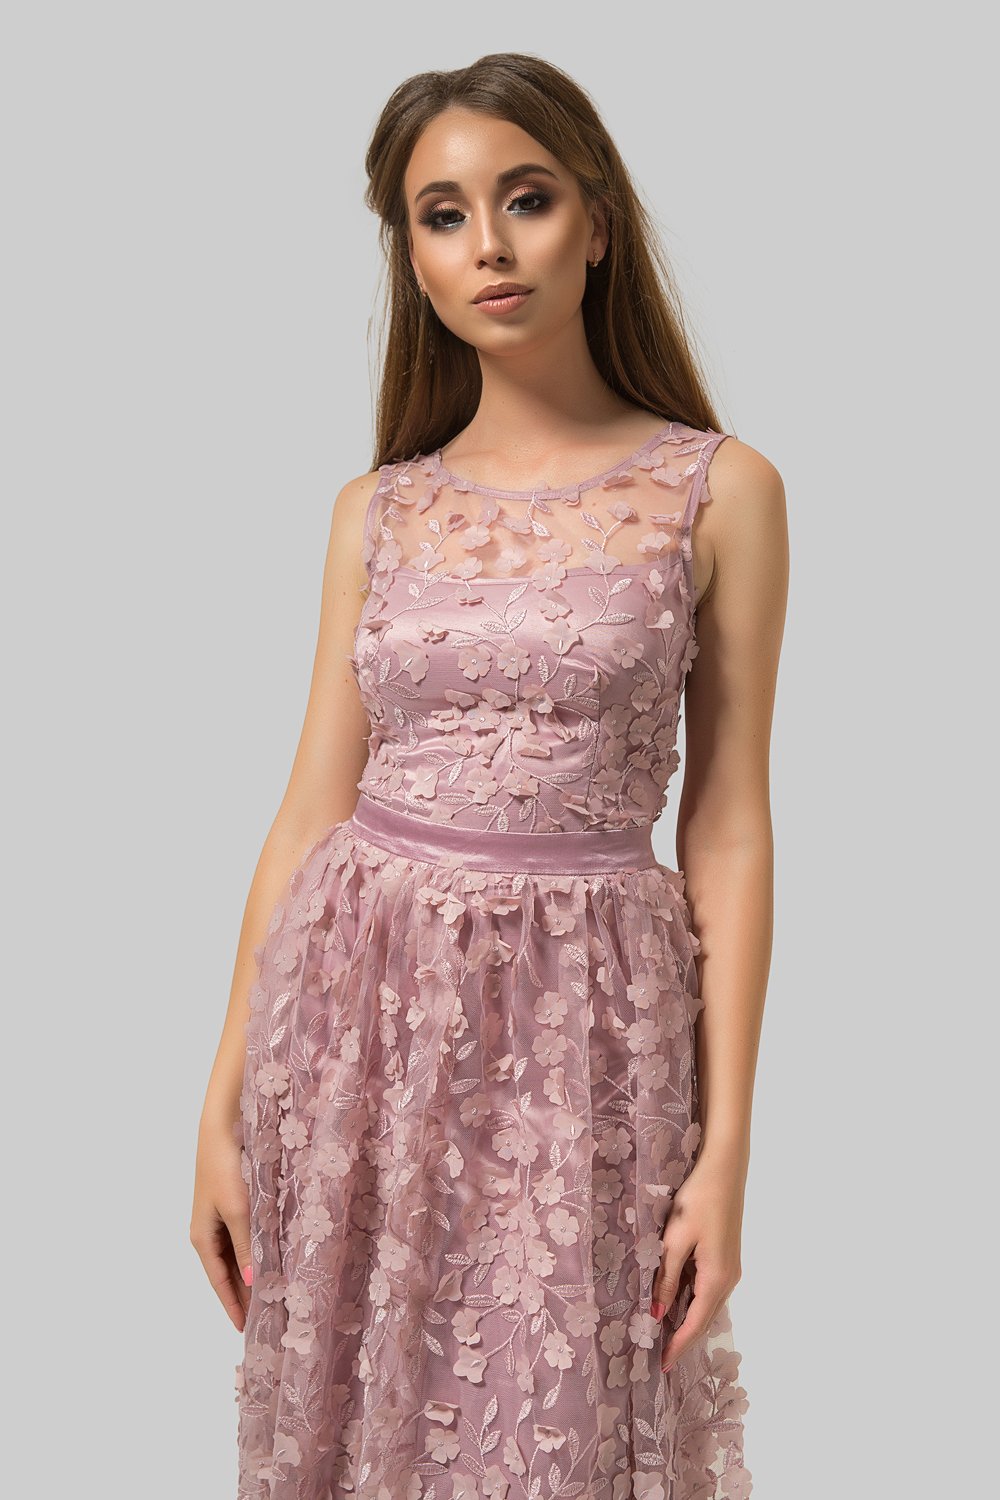 Вечернее платье в пол врозовом цвете